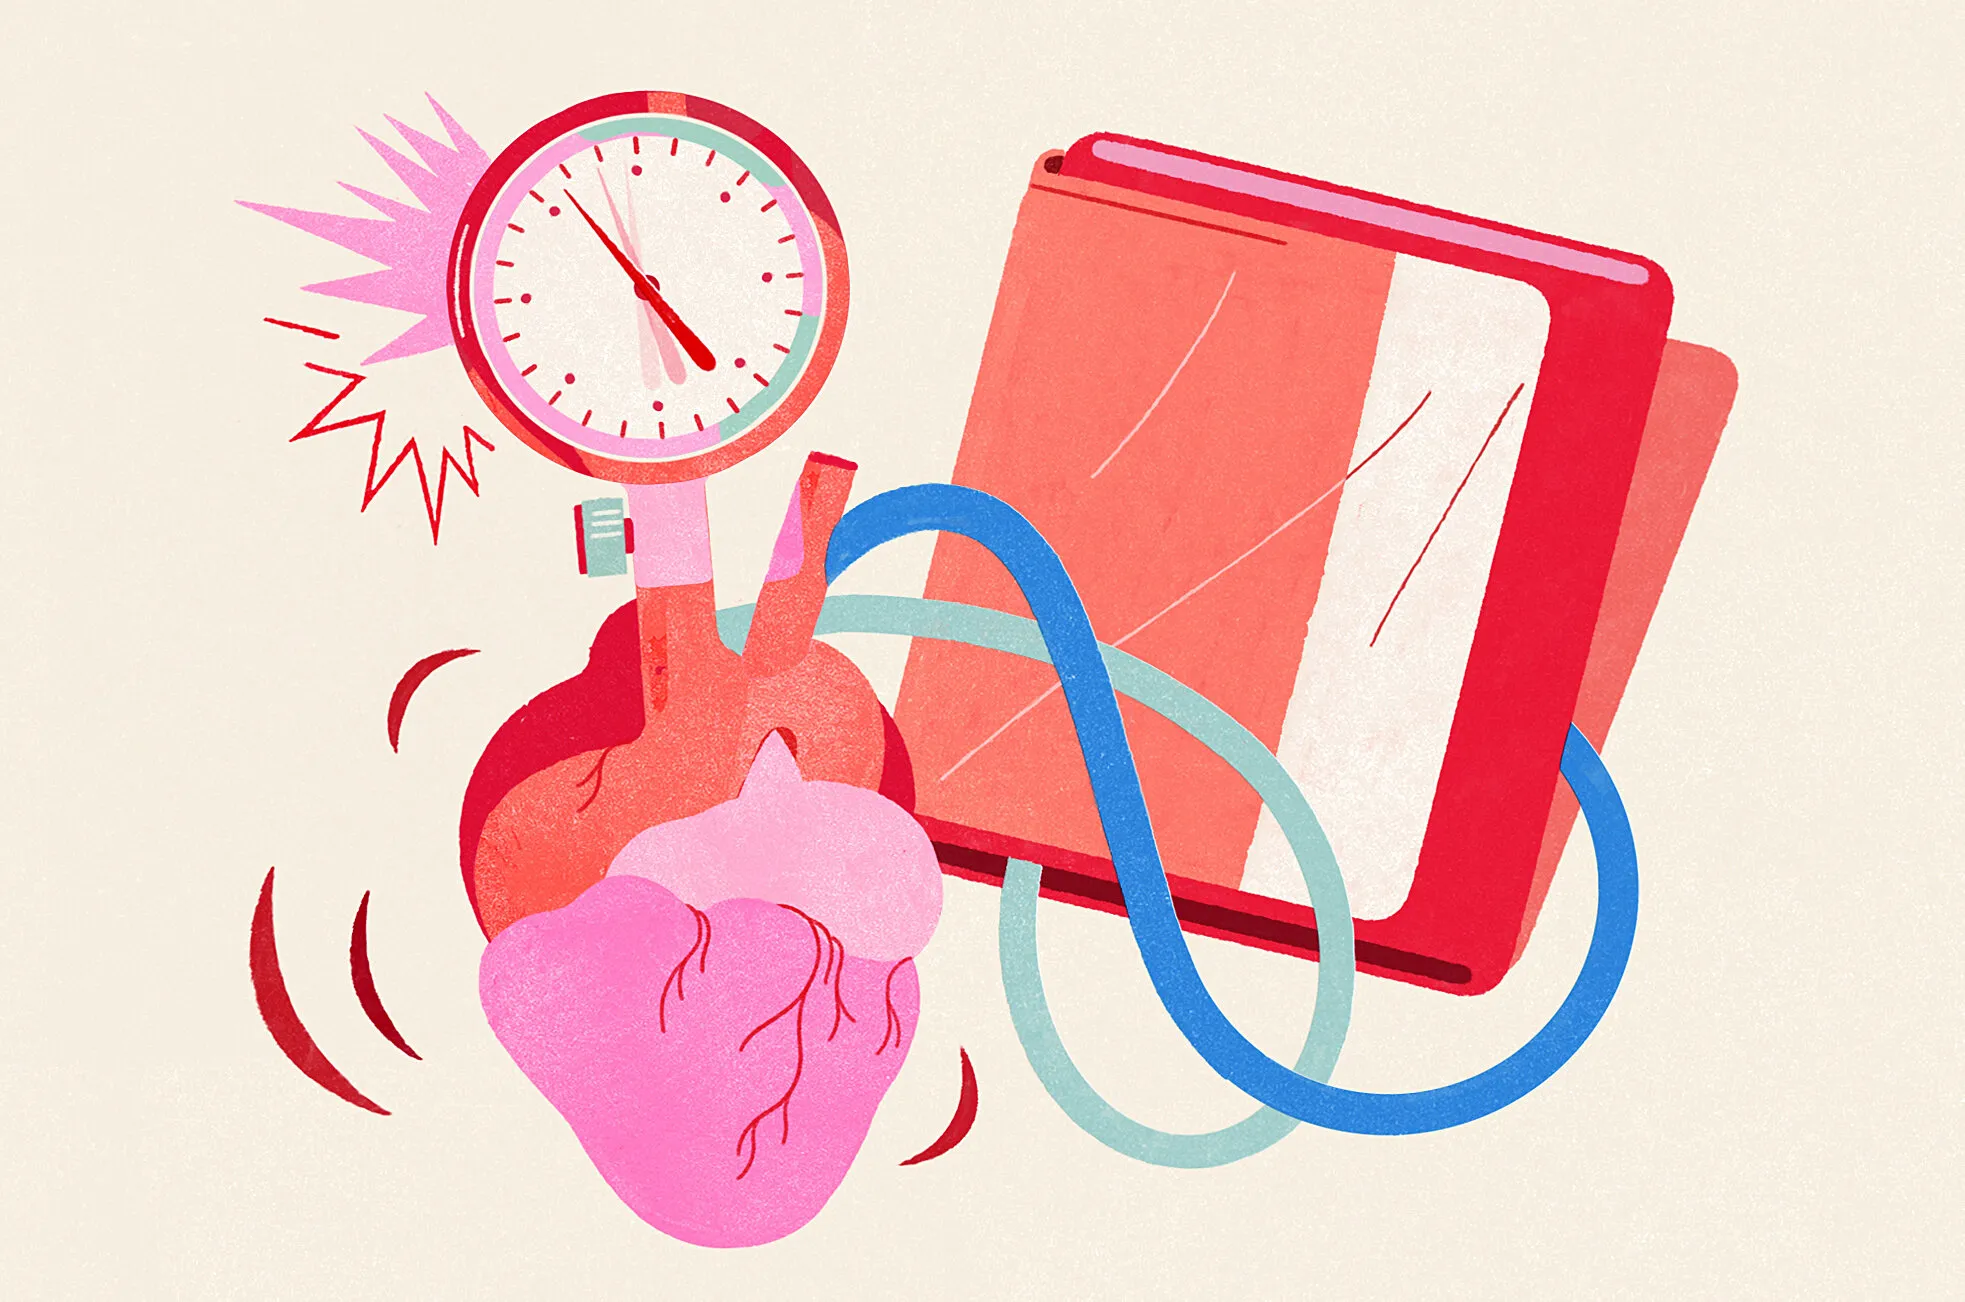 Huyết áp cao có nguy hiểm không? Giải pháp khắc phục hiệu quả